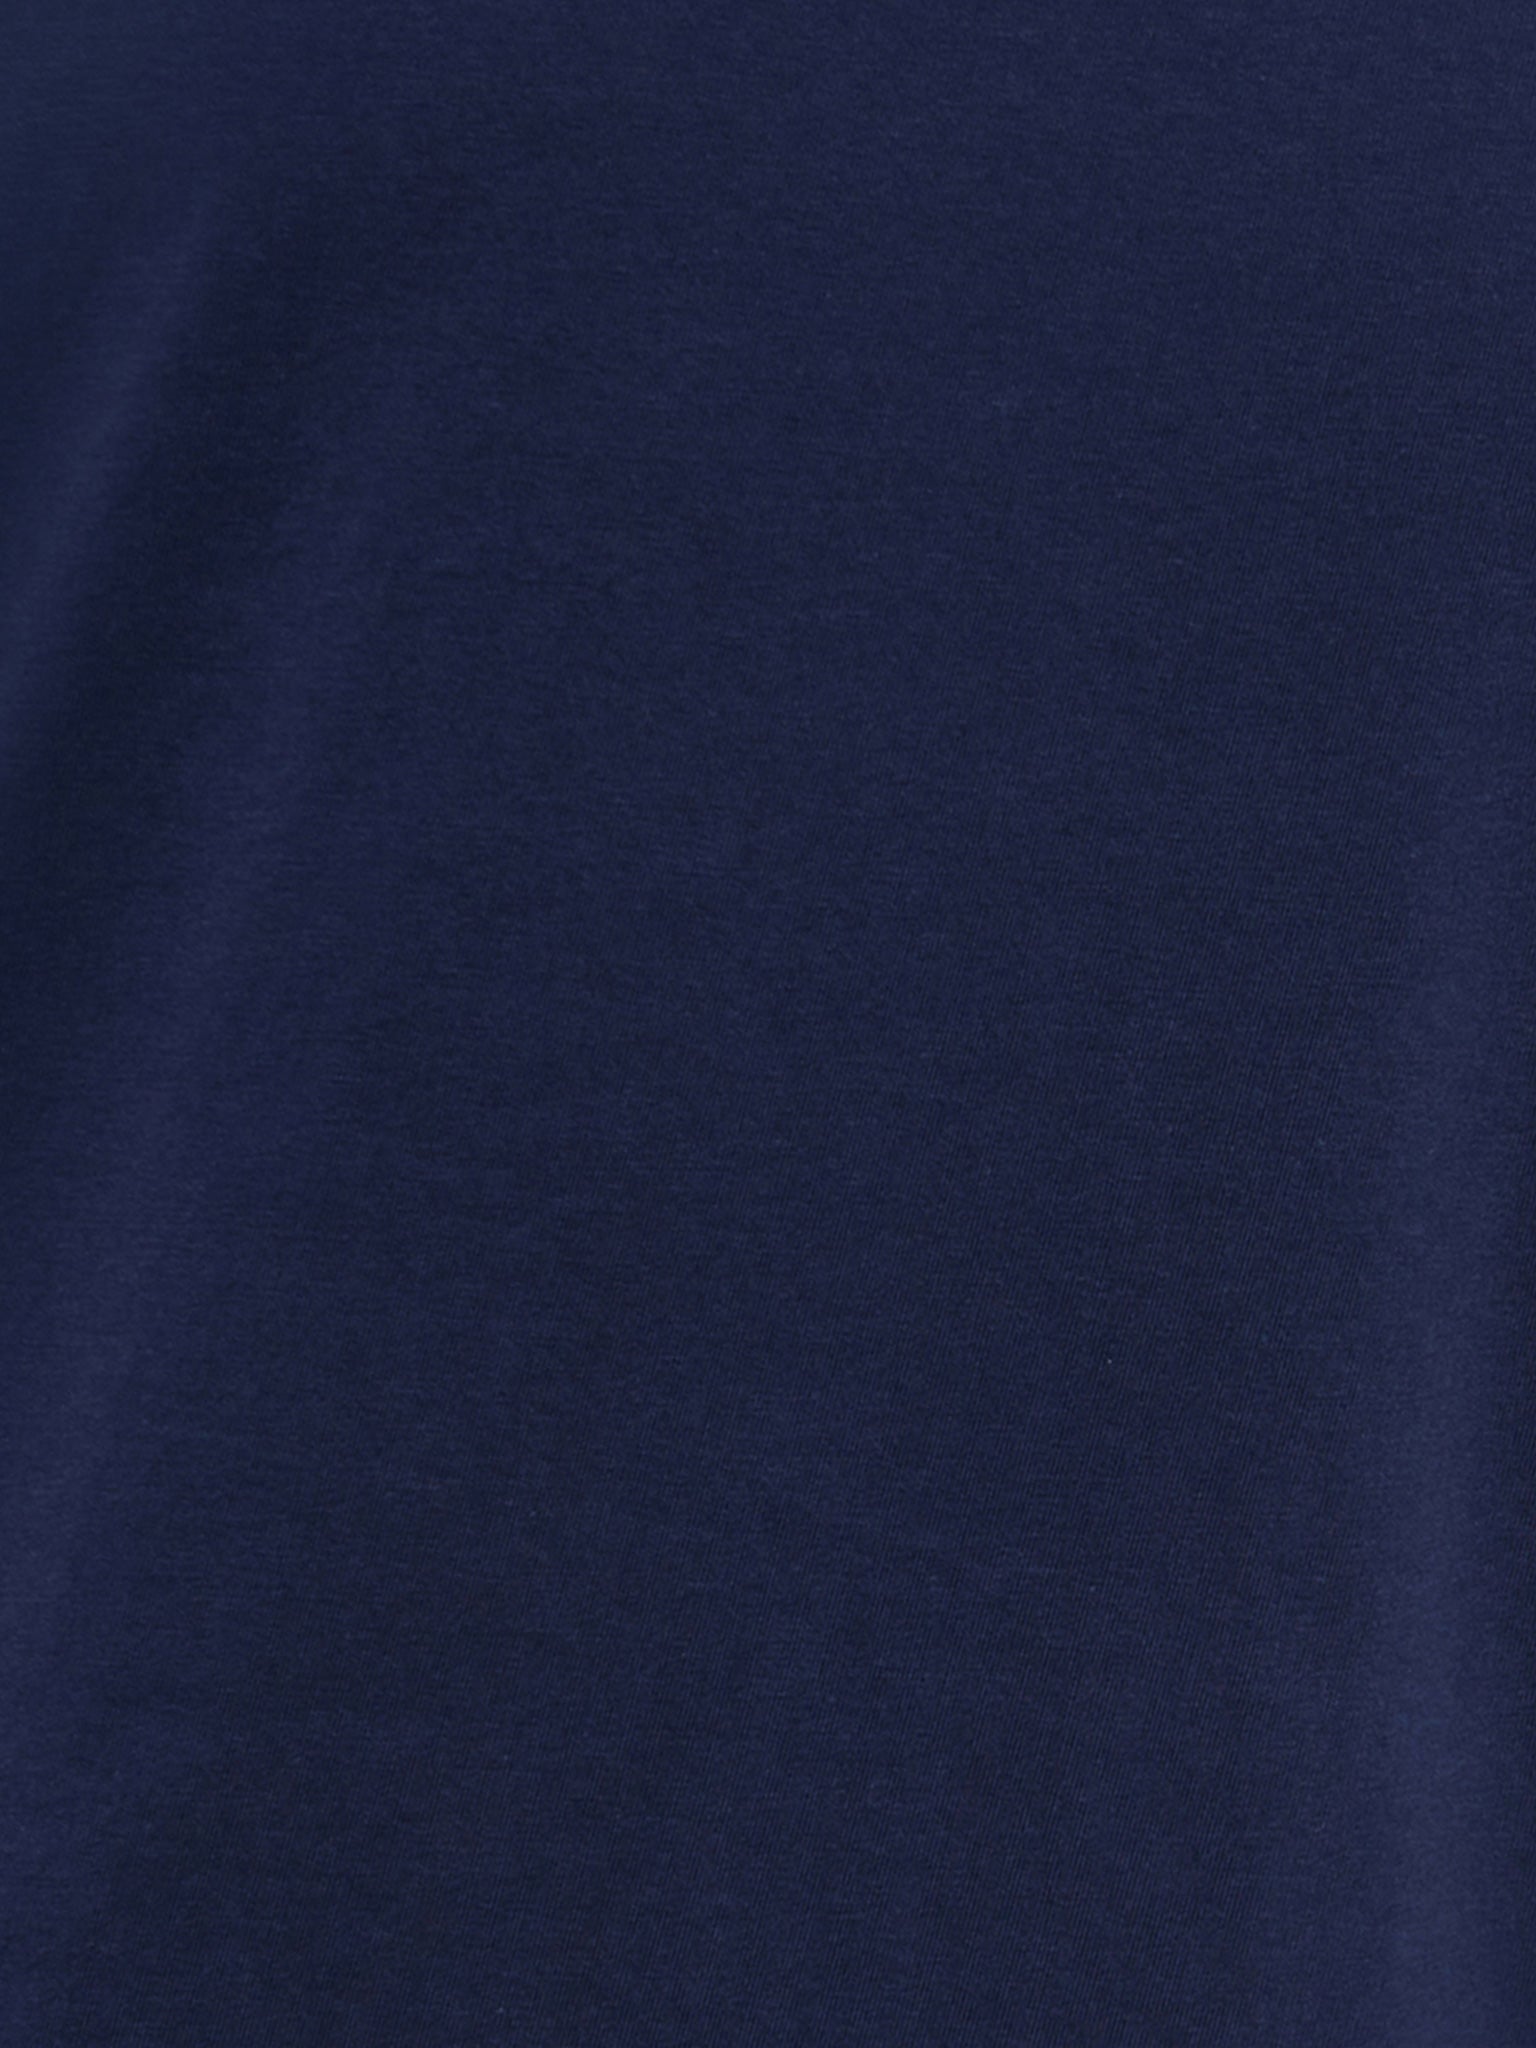 Ανδρική μπλούζα αμάνικη FBM009-003-04 | FBM009-003-04